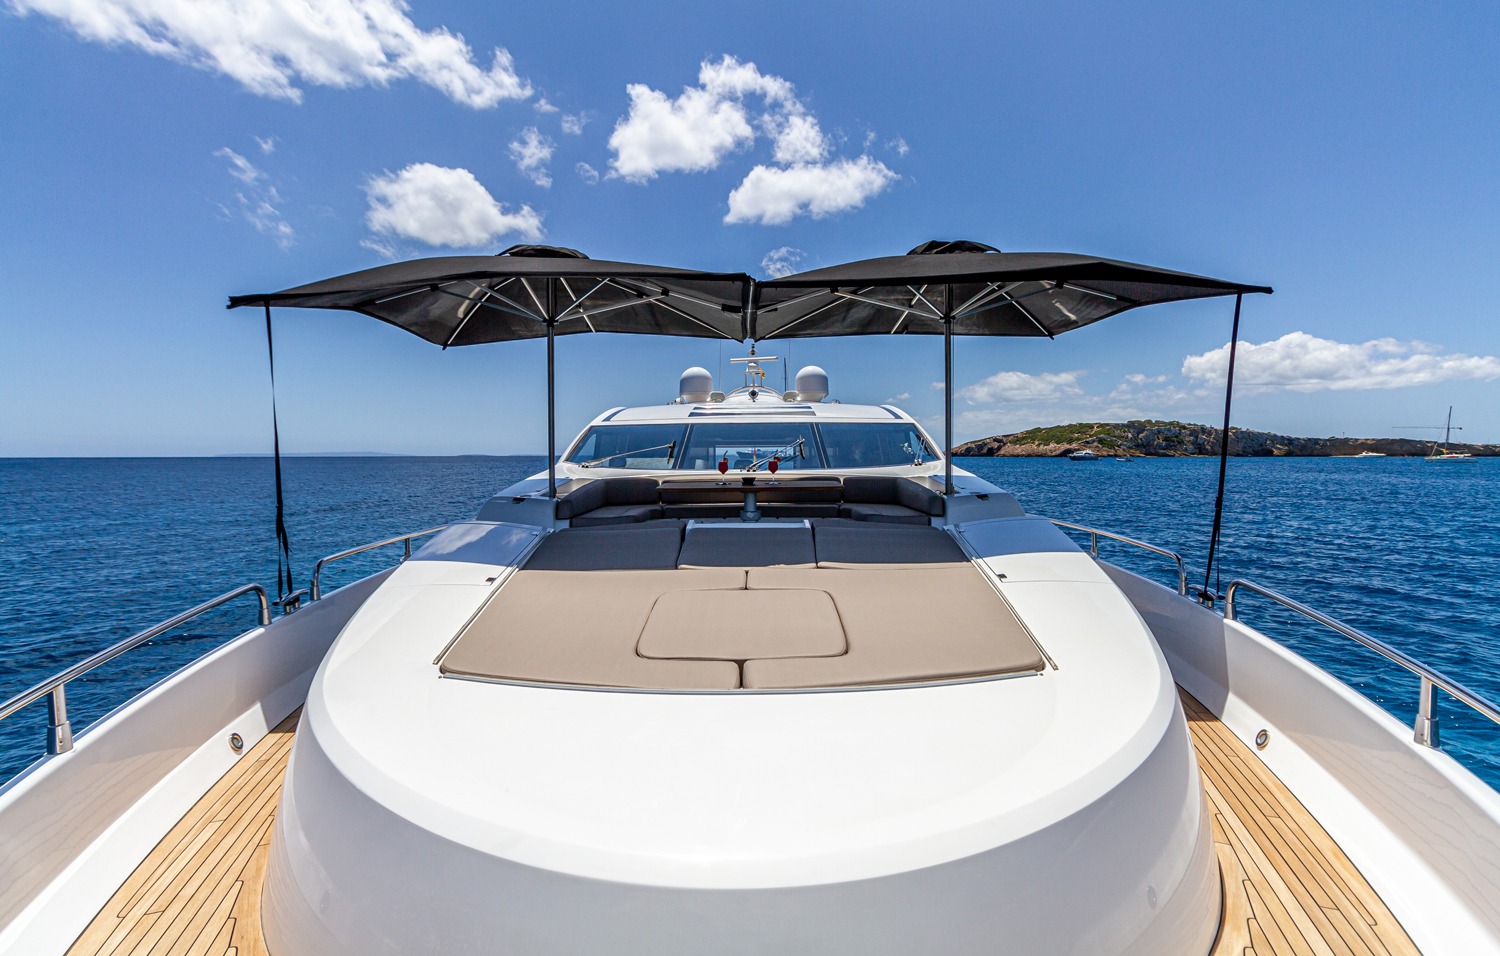 Basad-Sunseeker-Yacht-For-Charter-In-Ibiza-Bow